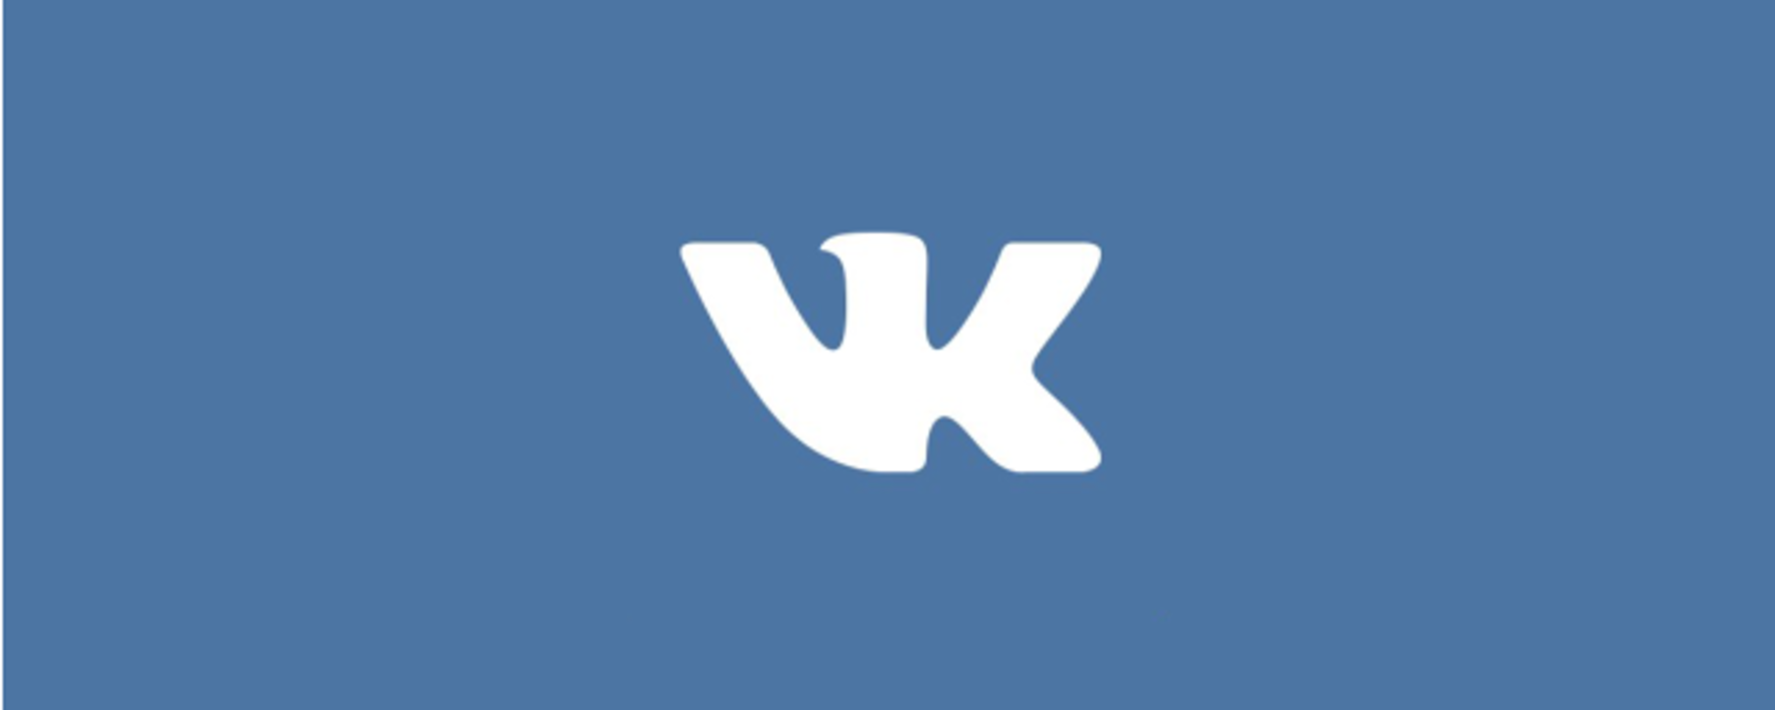 Vk com verniy put. Логотип ВК. Первый логотип ВК. Значок Dr. Картинки для ВК.